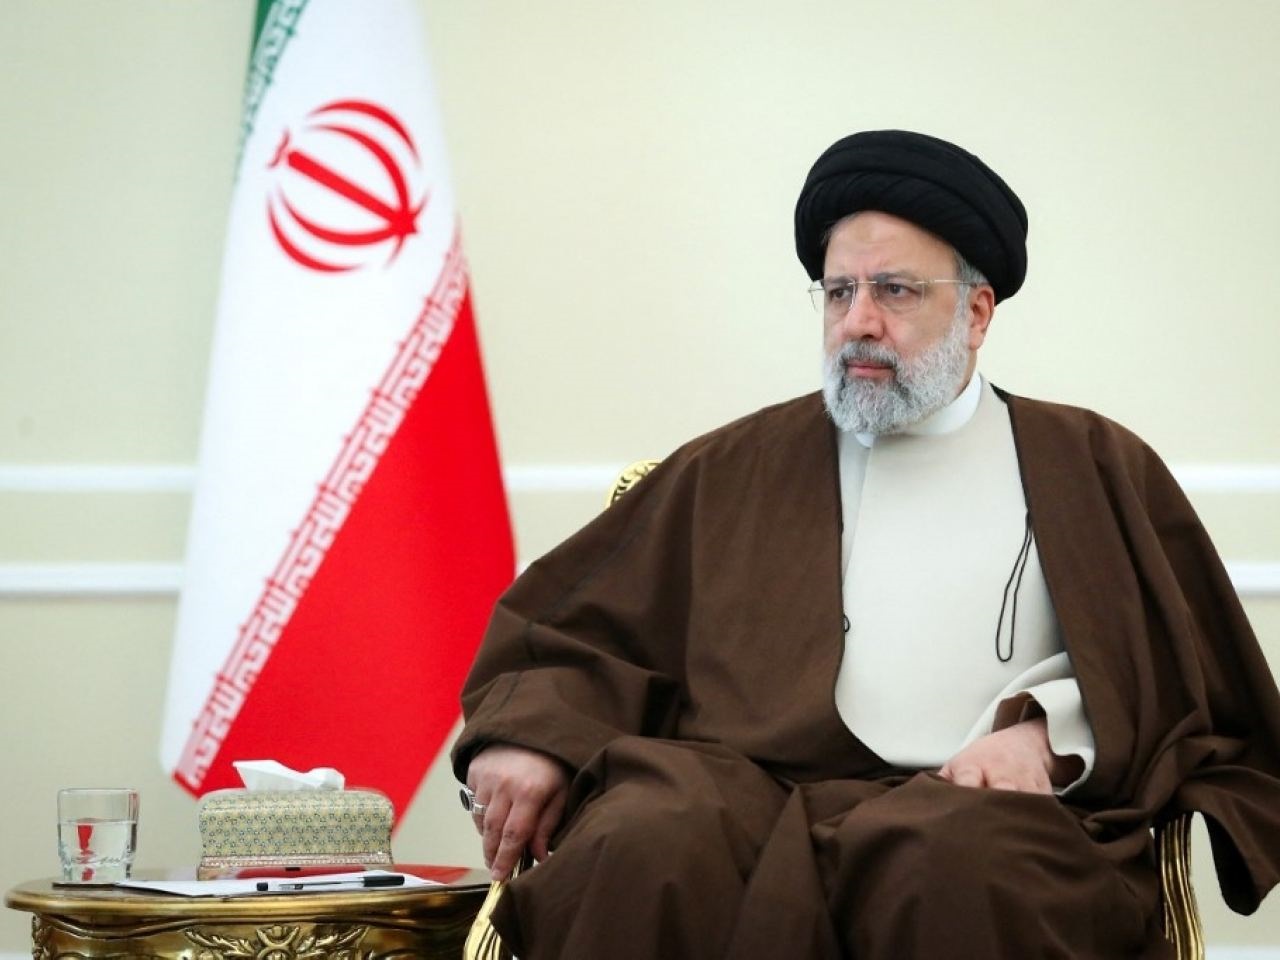 Irán sa stáva významnou regionálnou mocnosťou, s ktorou treba počítať